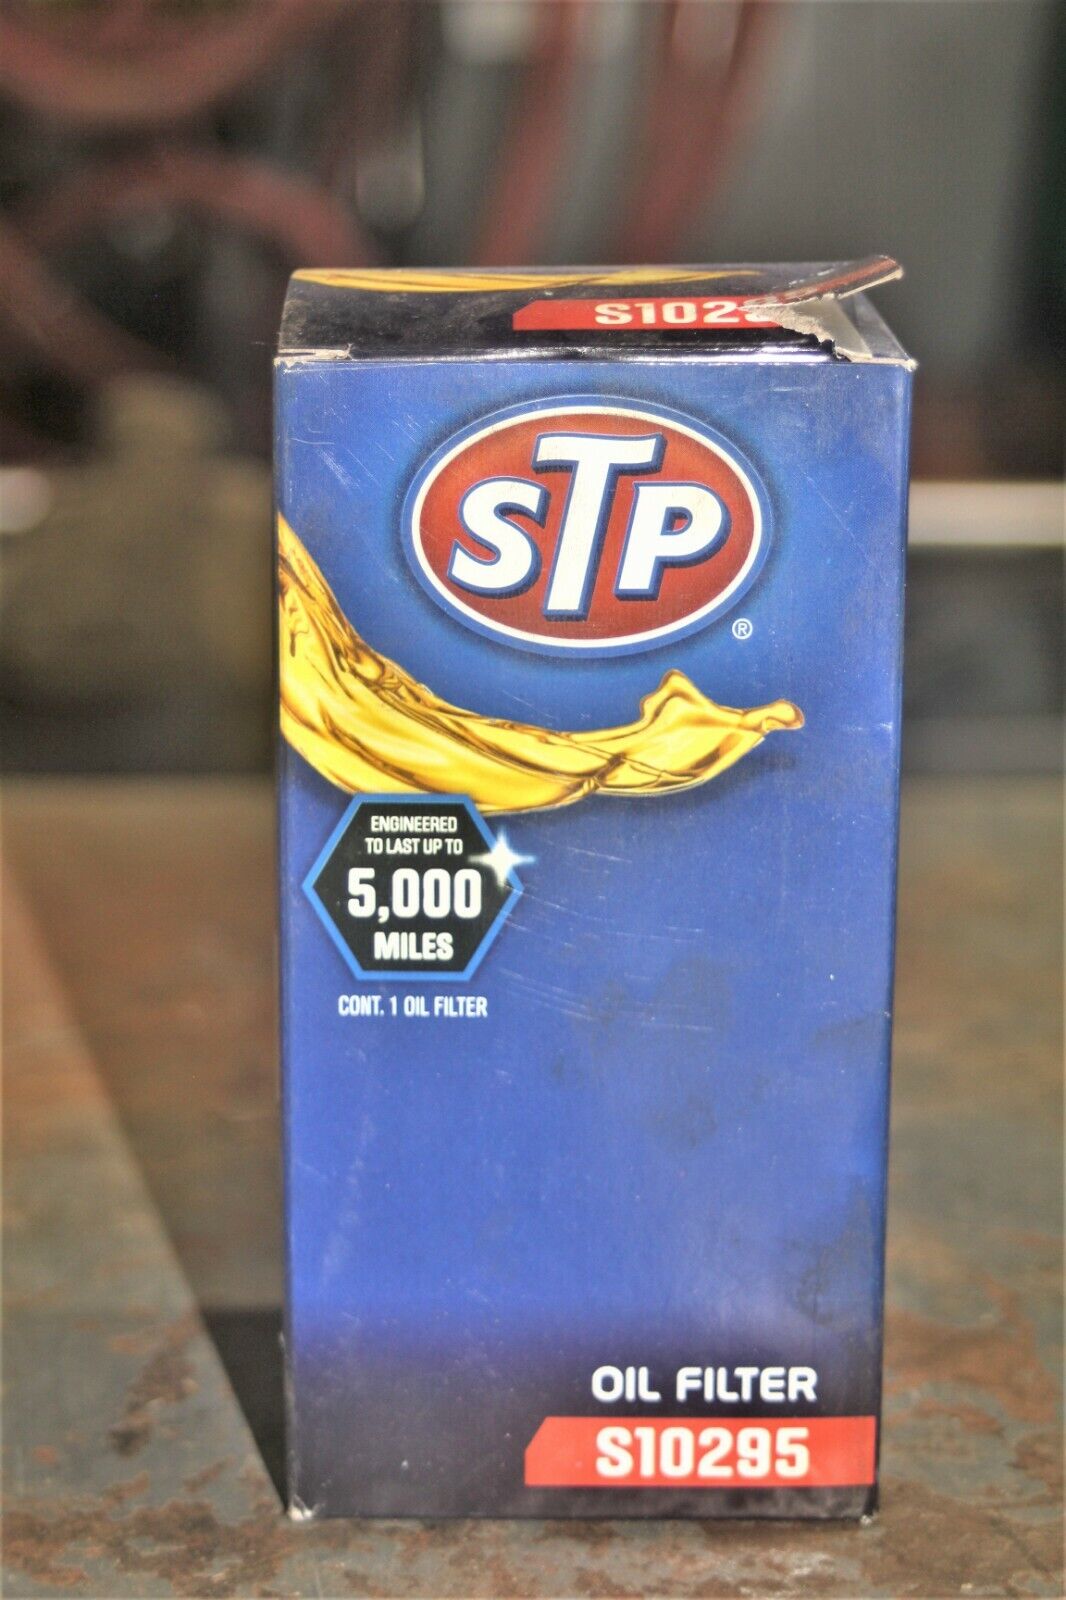 STP Engine Oil Filter S10295